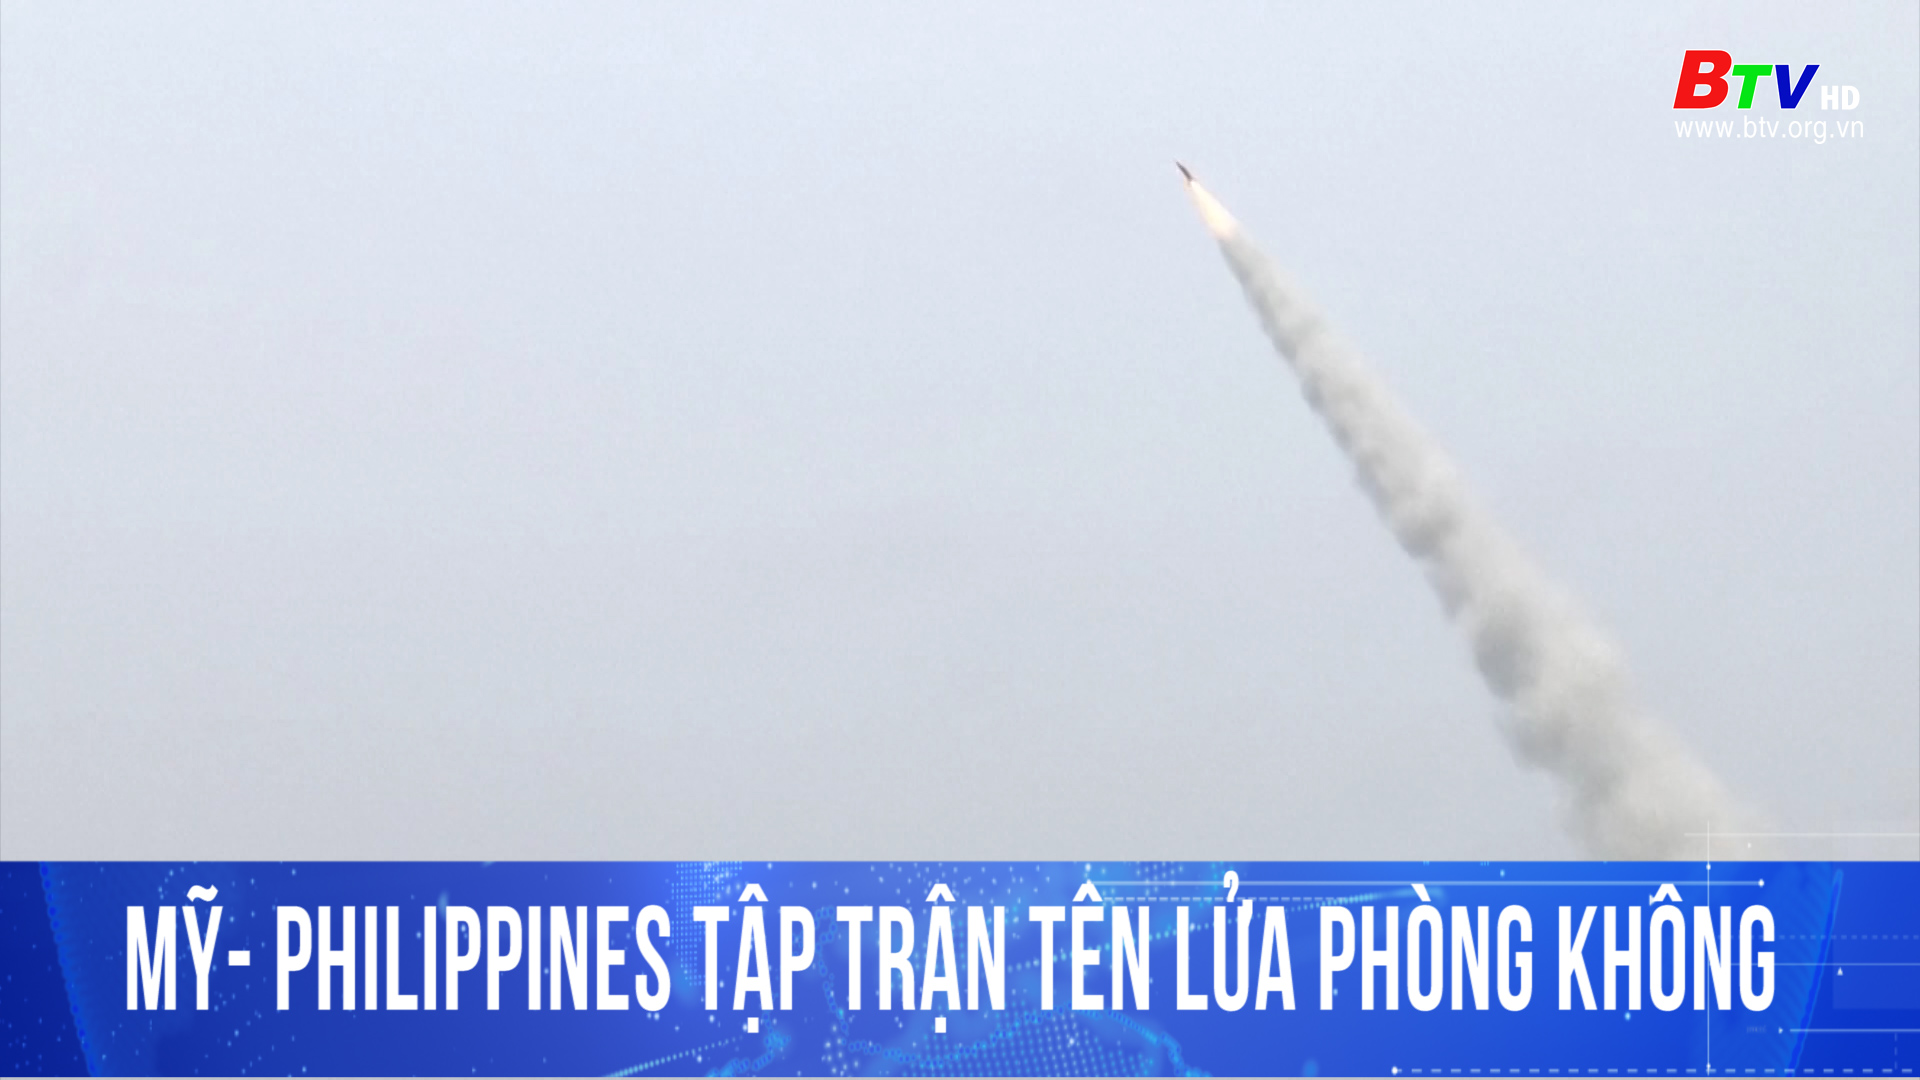 Mỹ- Philippines tập trận tên lửa phòng không